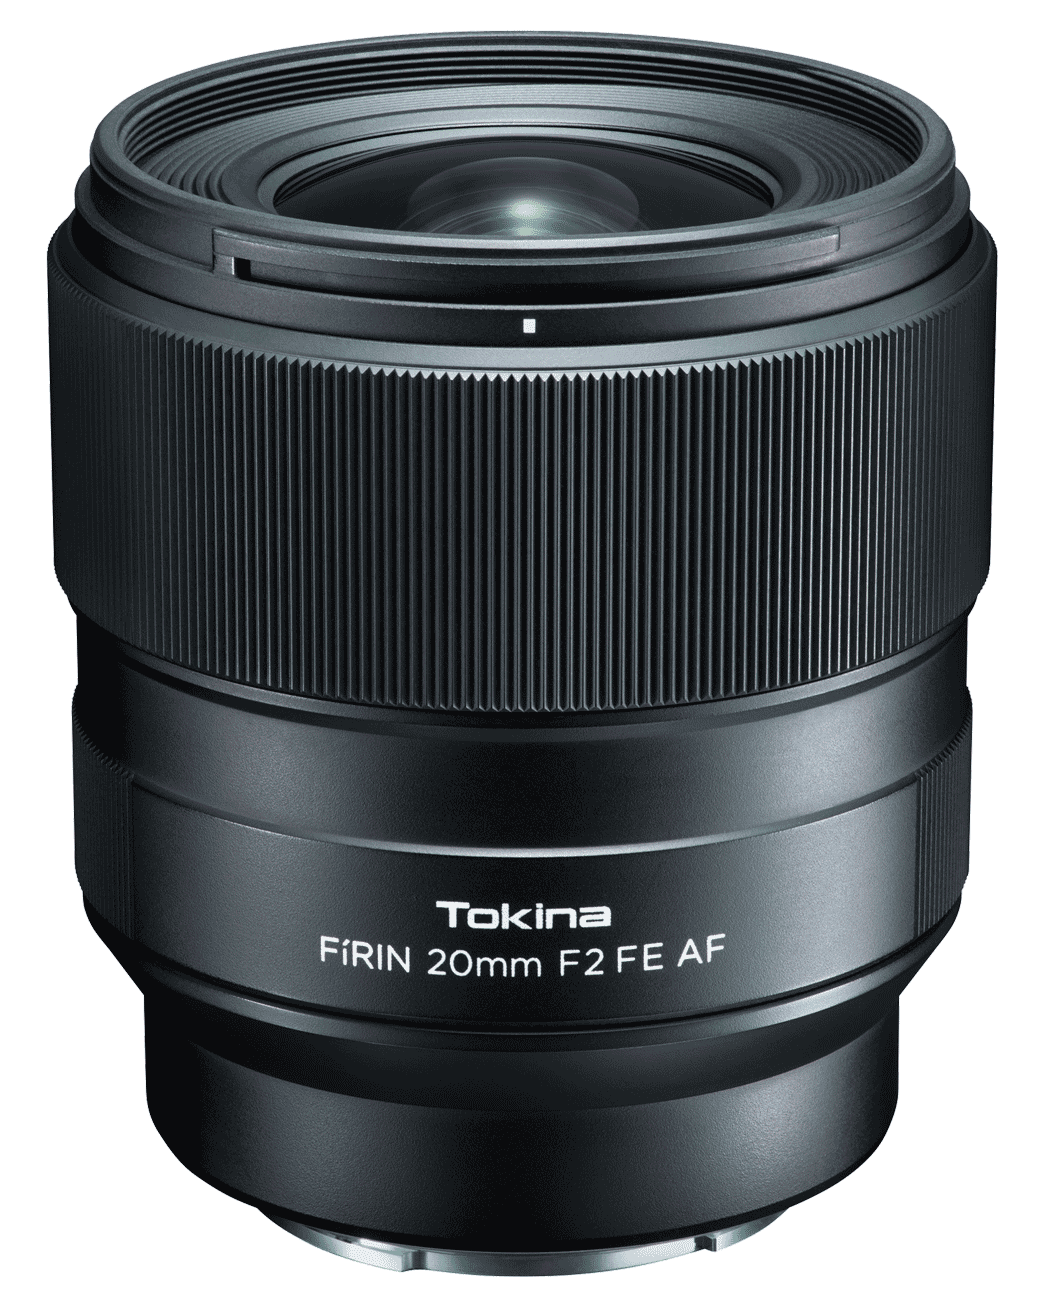 Tokina - FíRIN 20mm F2 FE AF